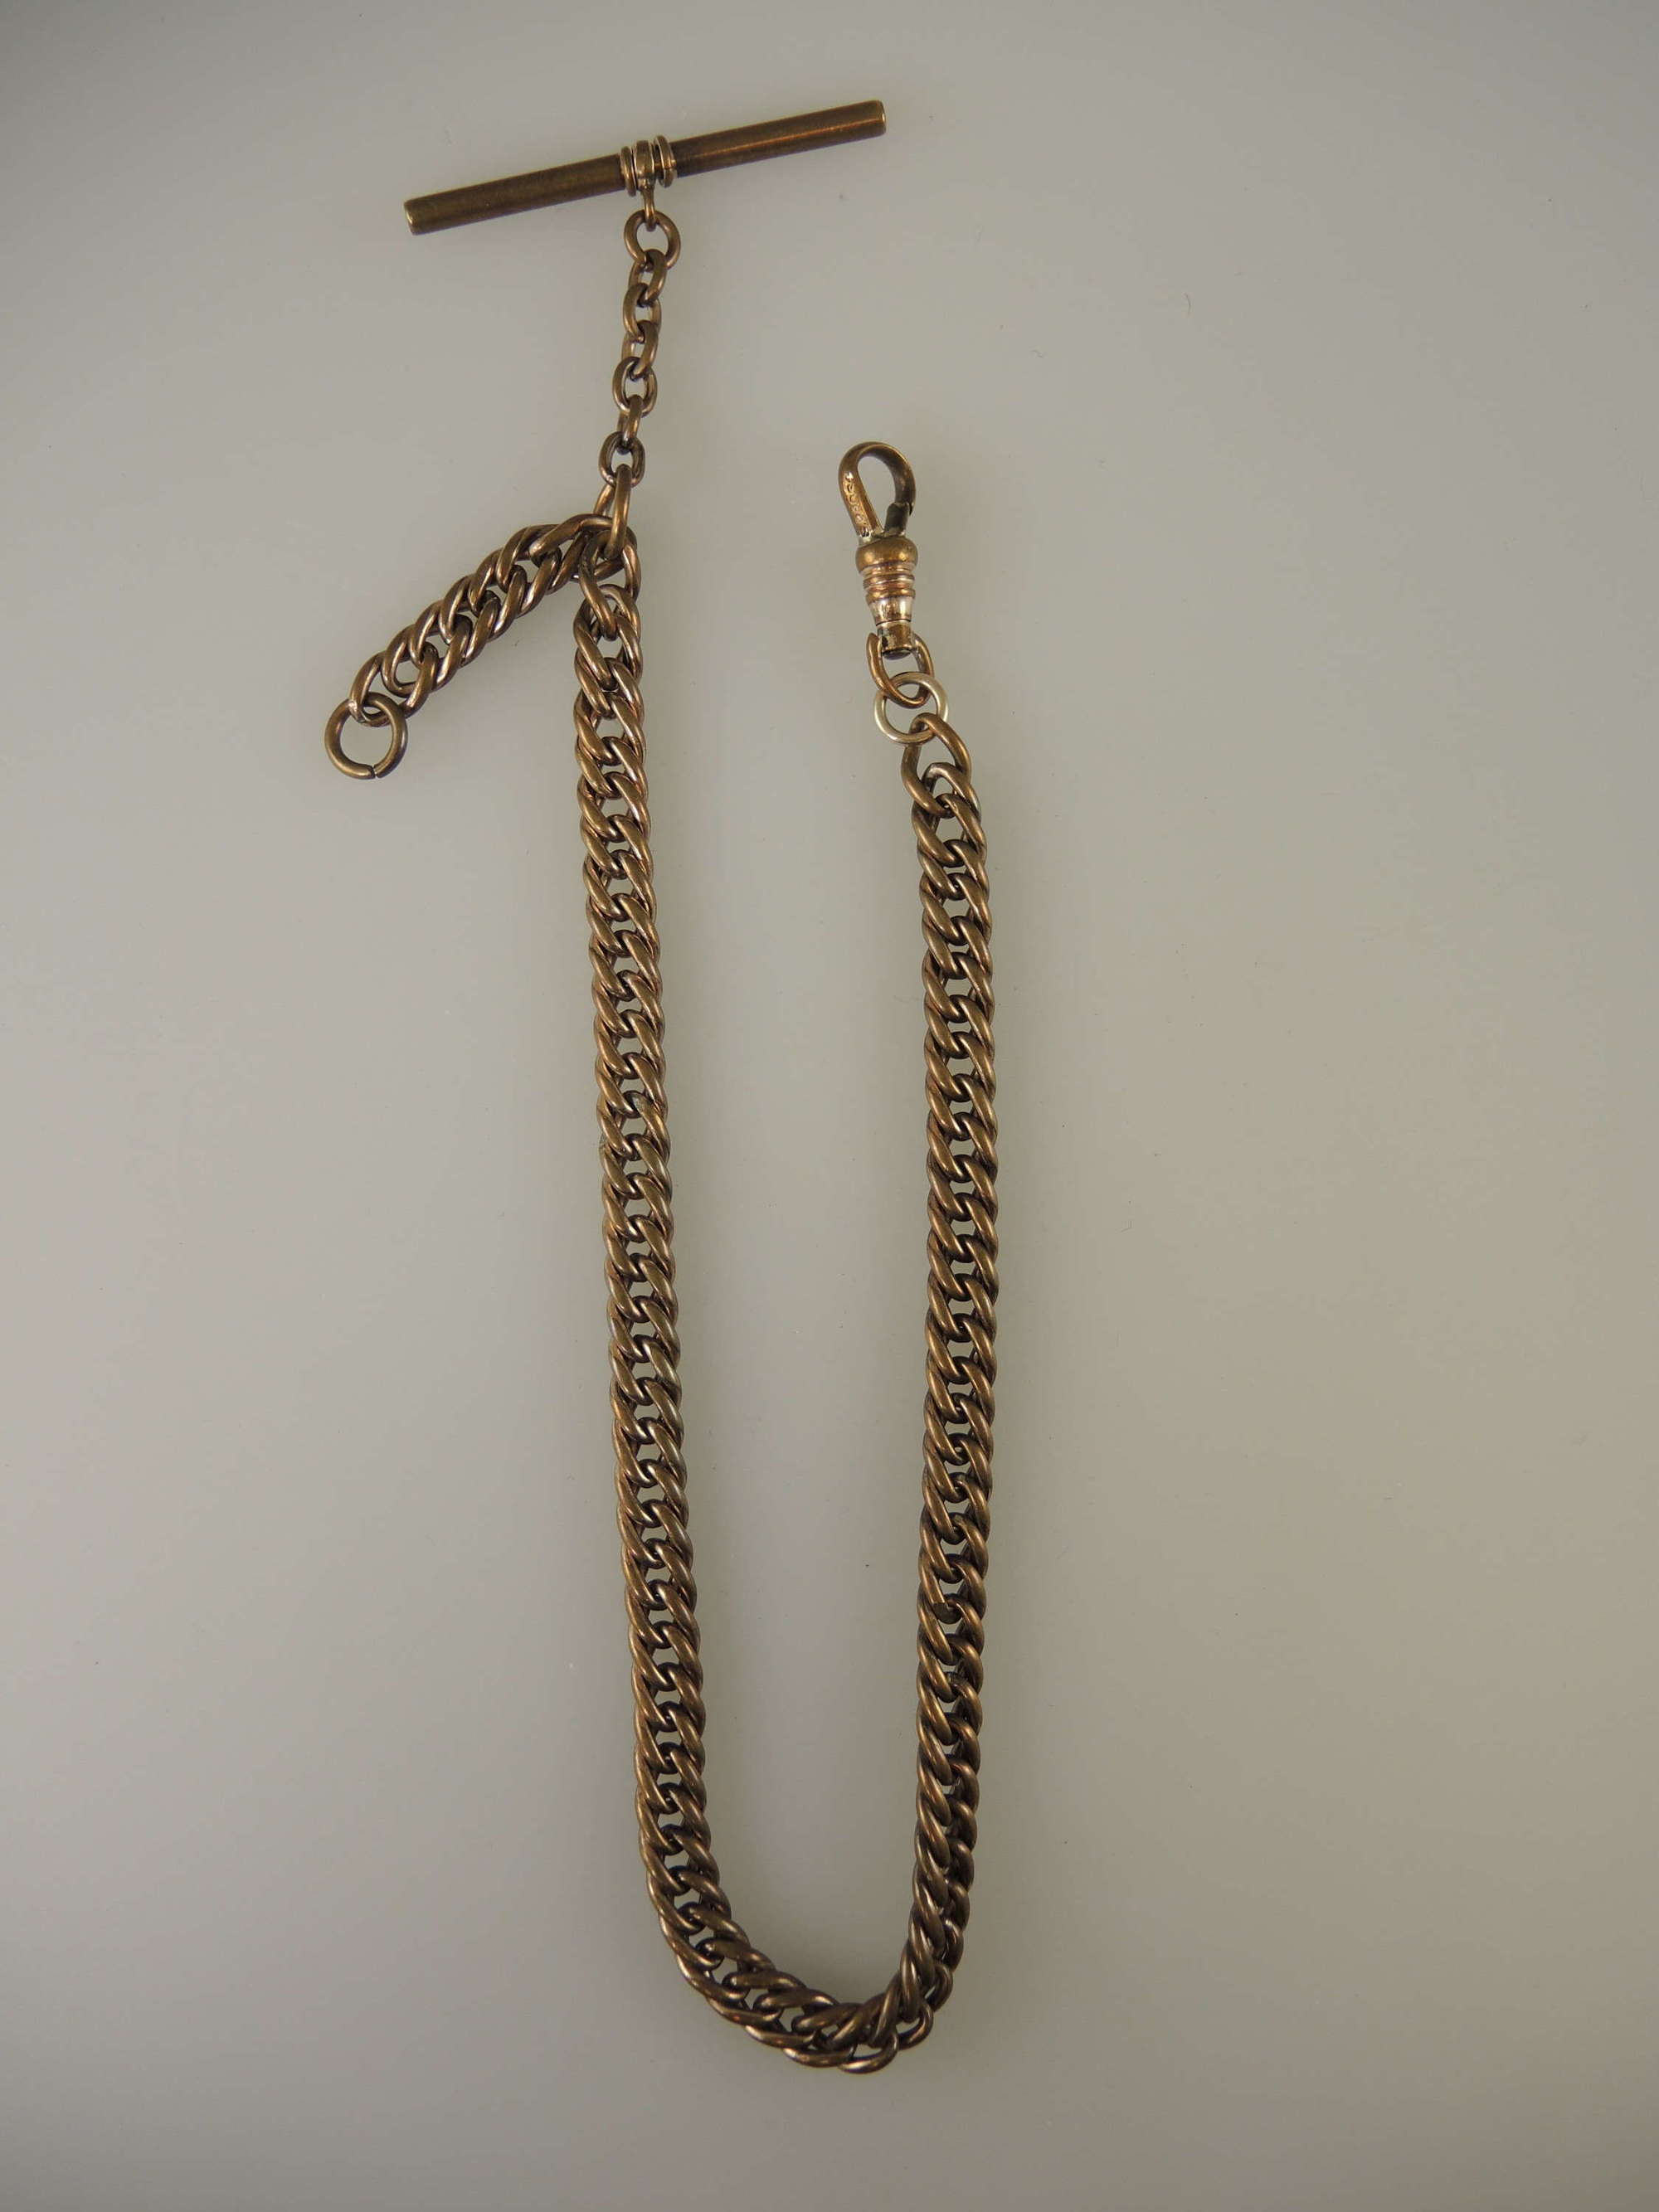 Victorian pocket watch chain c1890